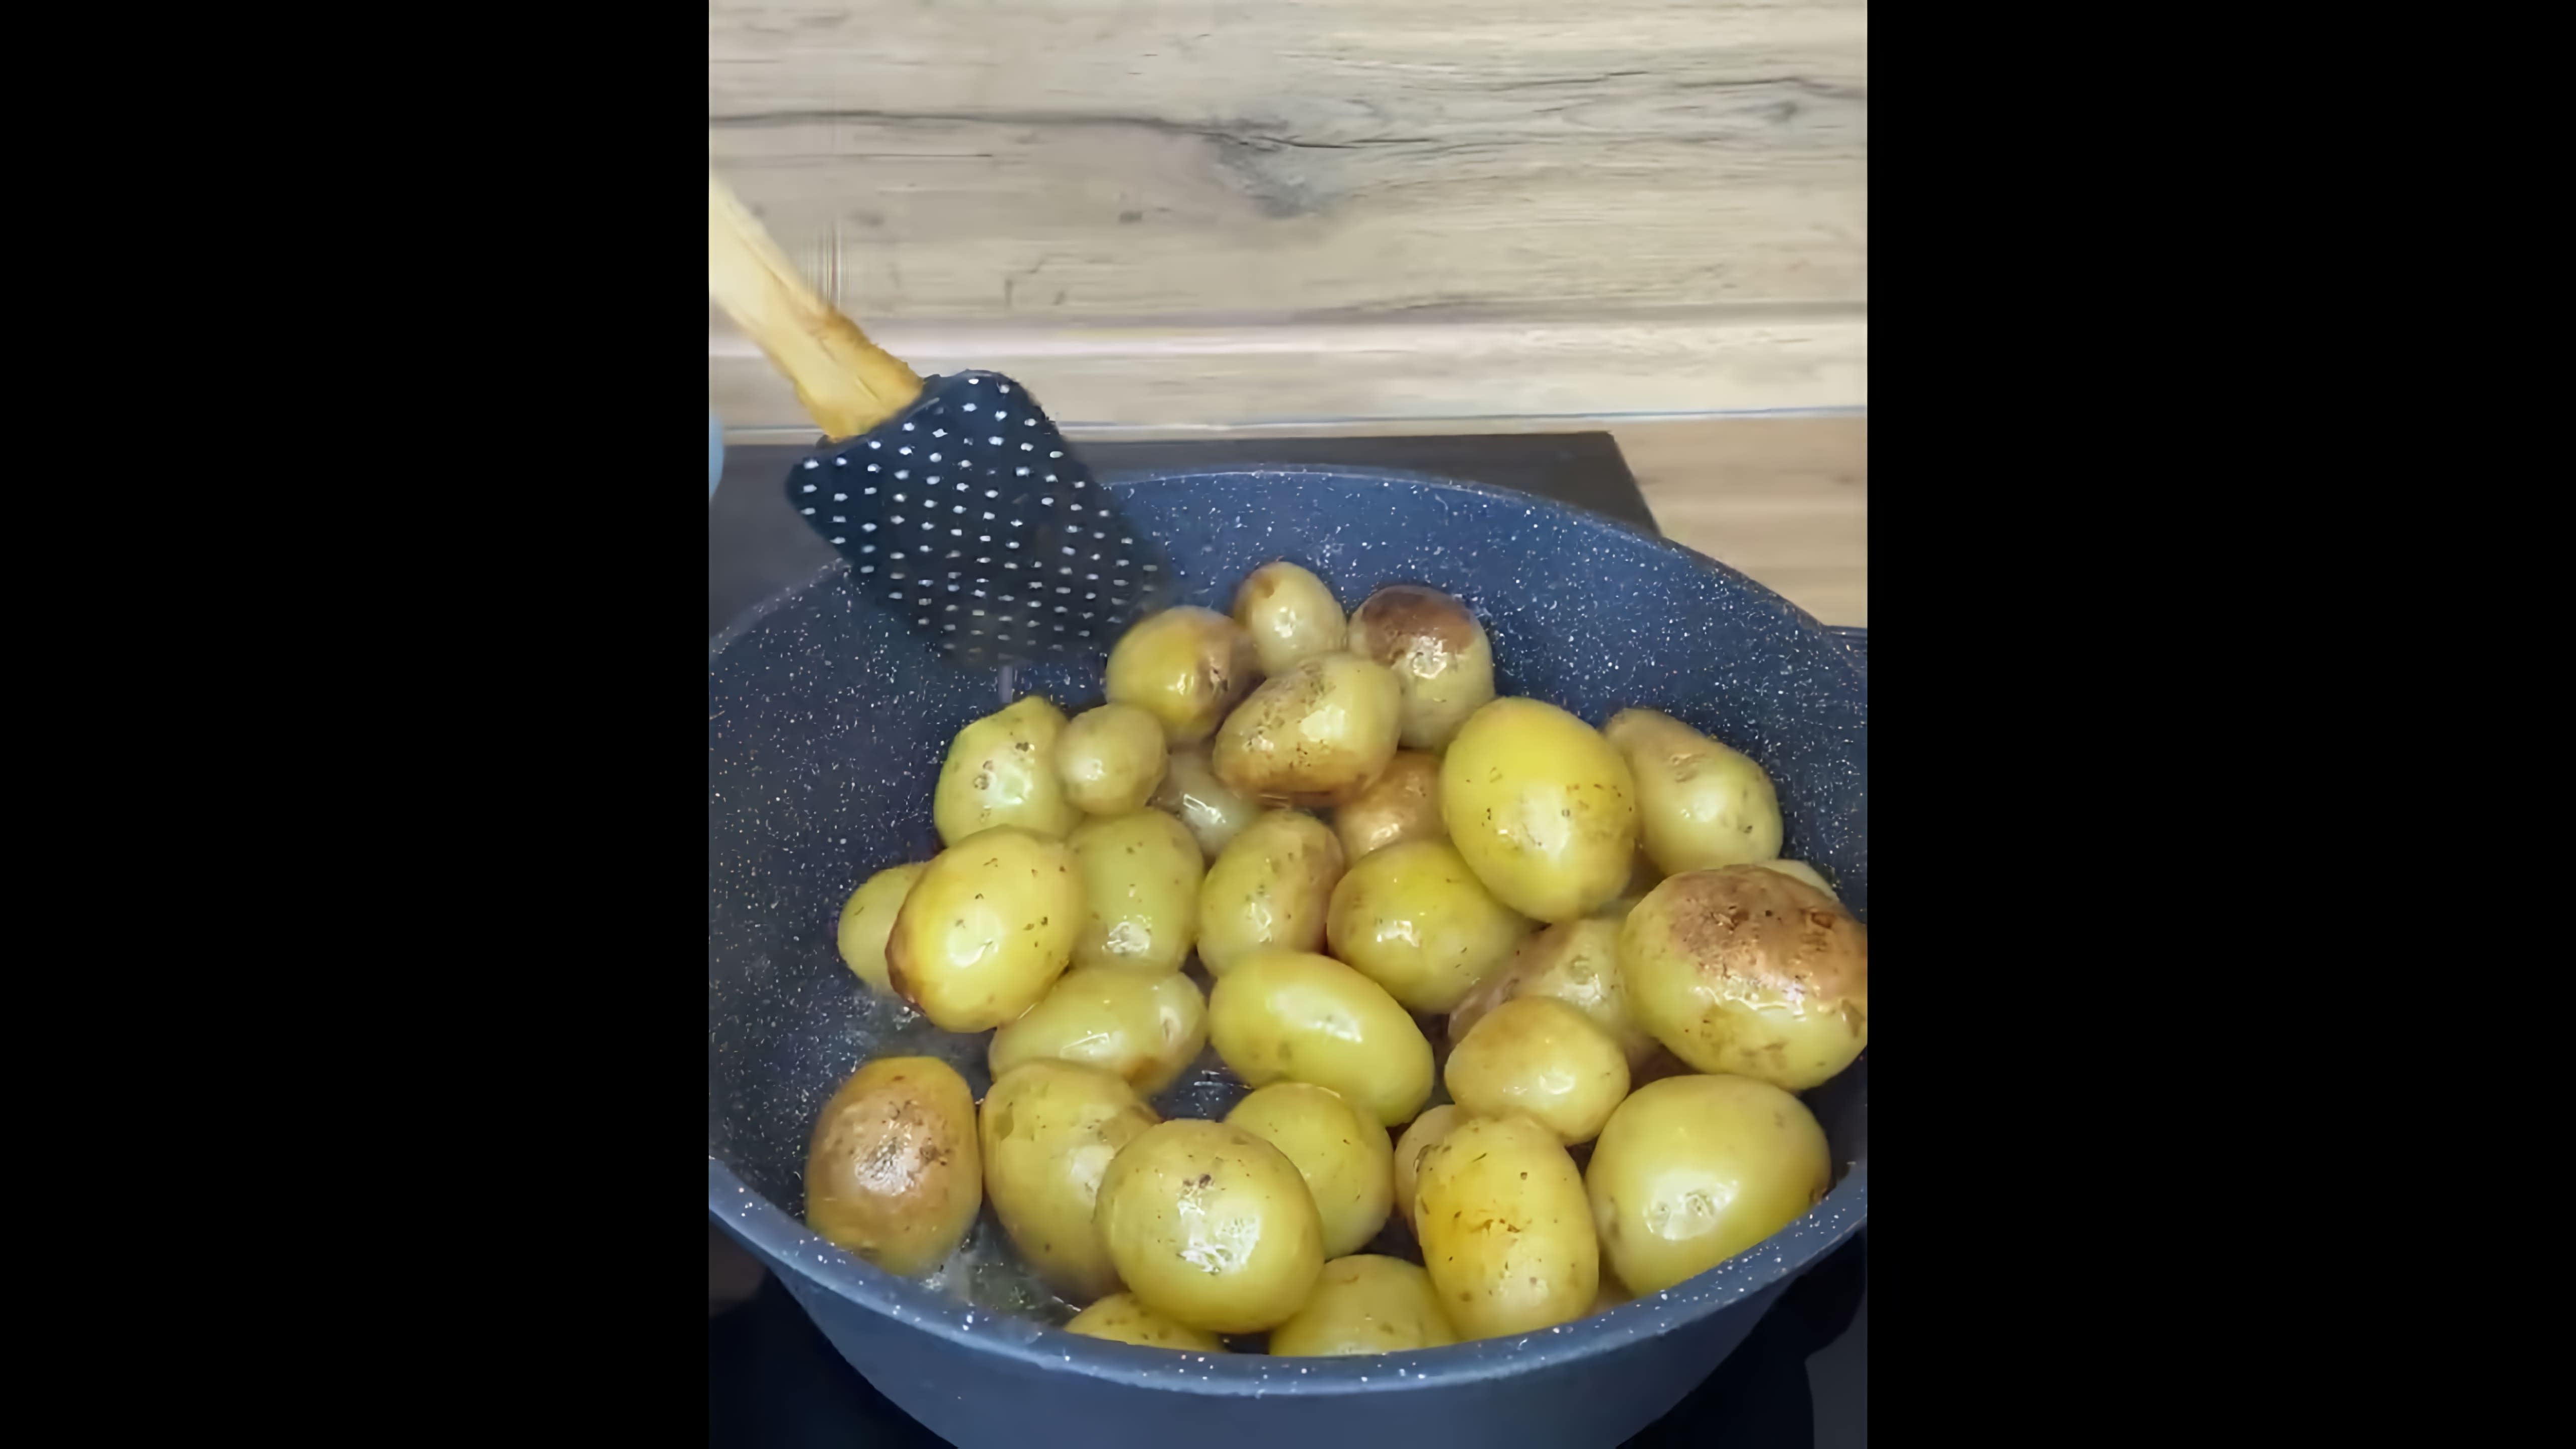 В этом видео демонстрируется процесс приготовления жареной молодой картошки целиком